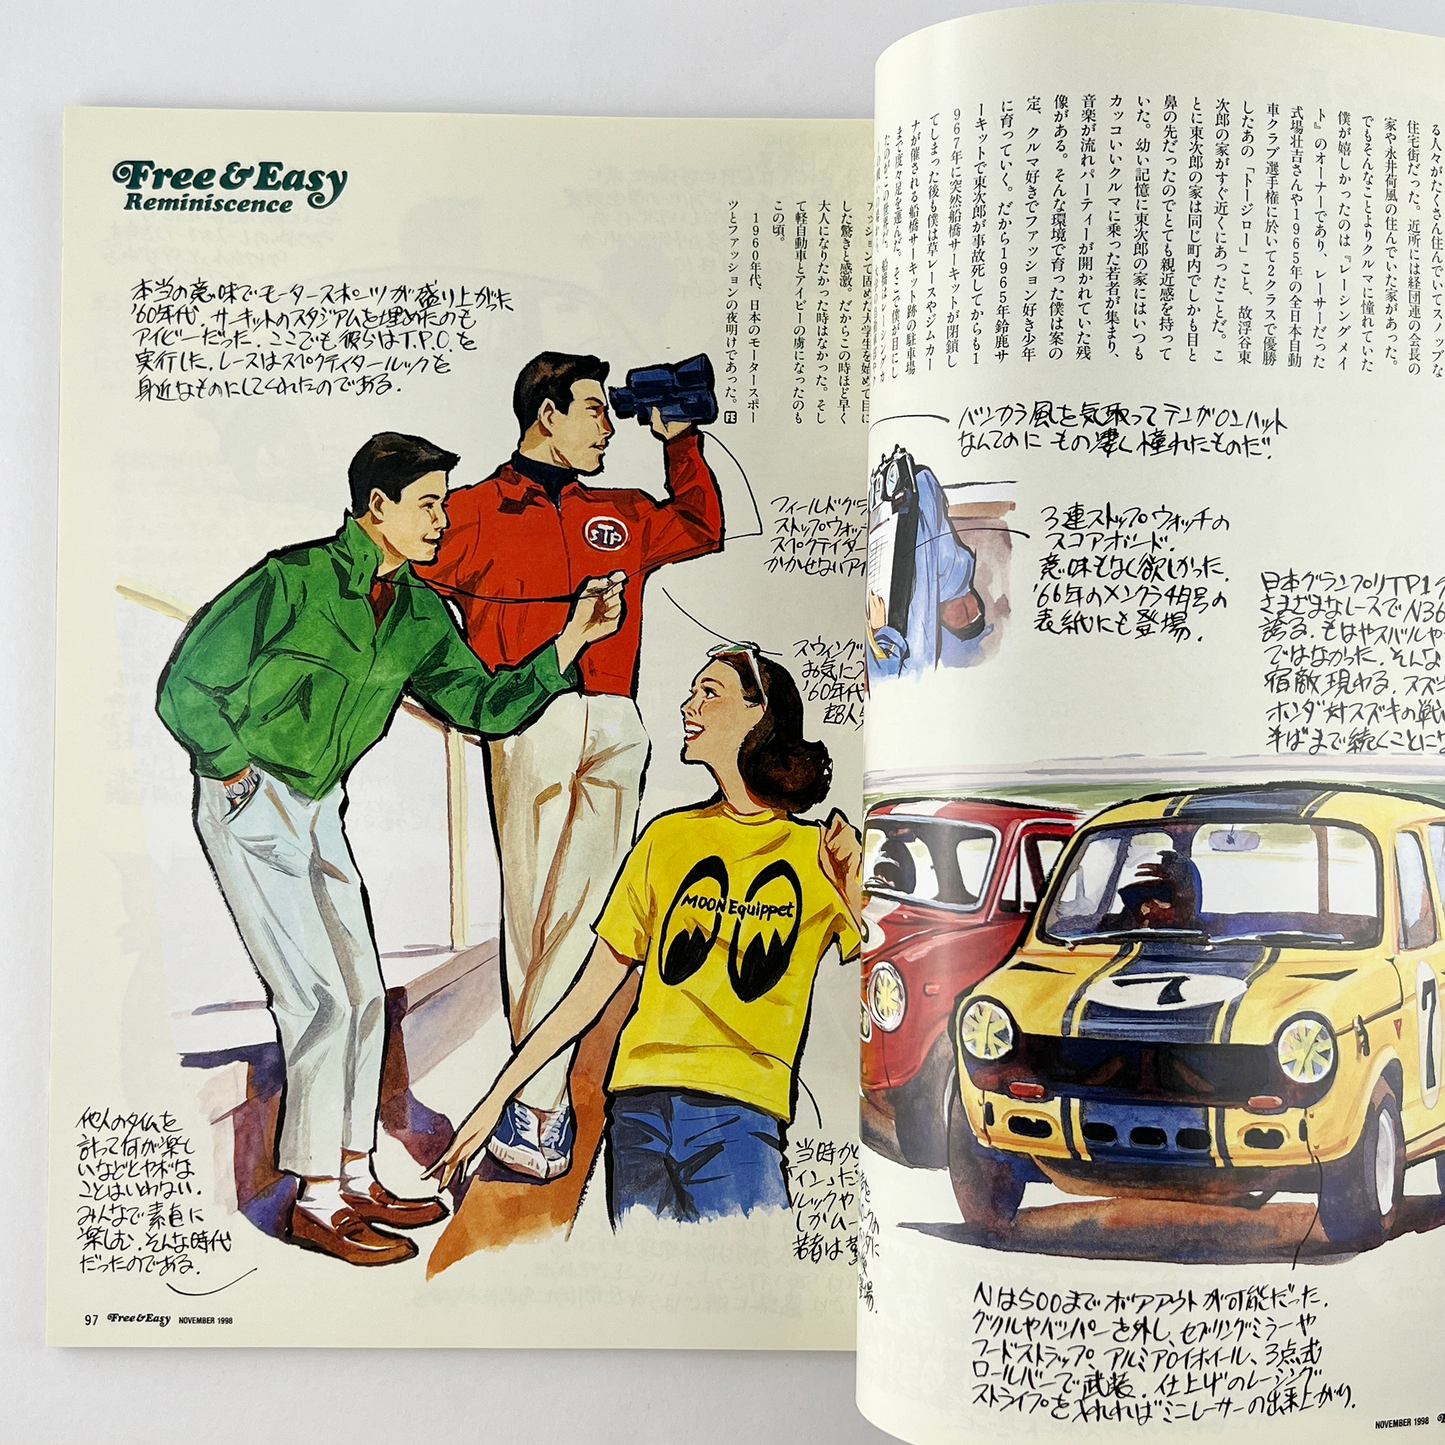 Free & Easy Vol.1 No.1 創刊号 1998年11月1日｜F＆E編集部